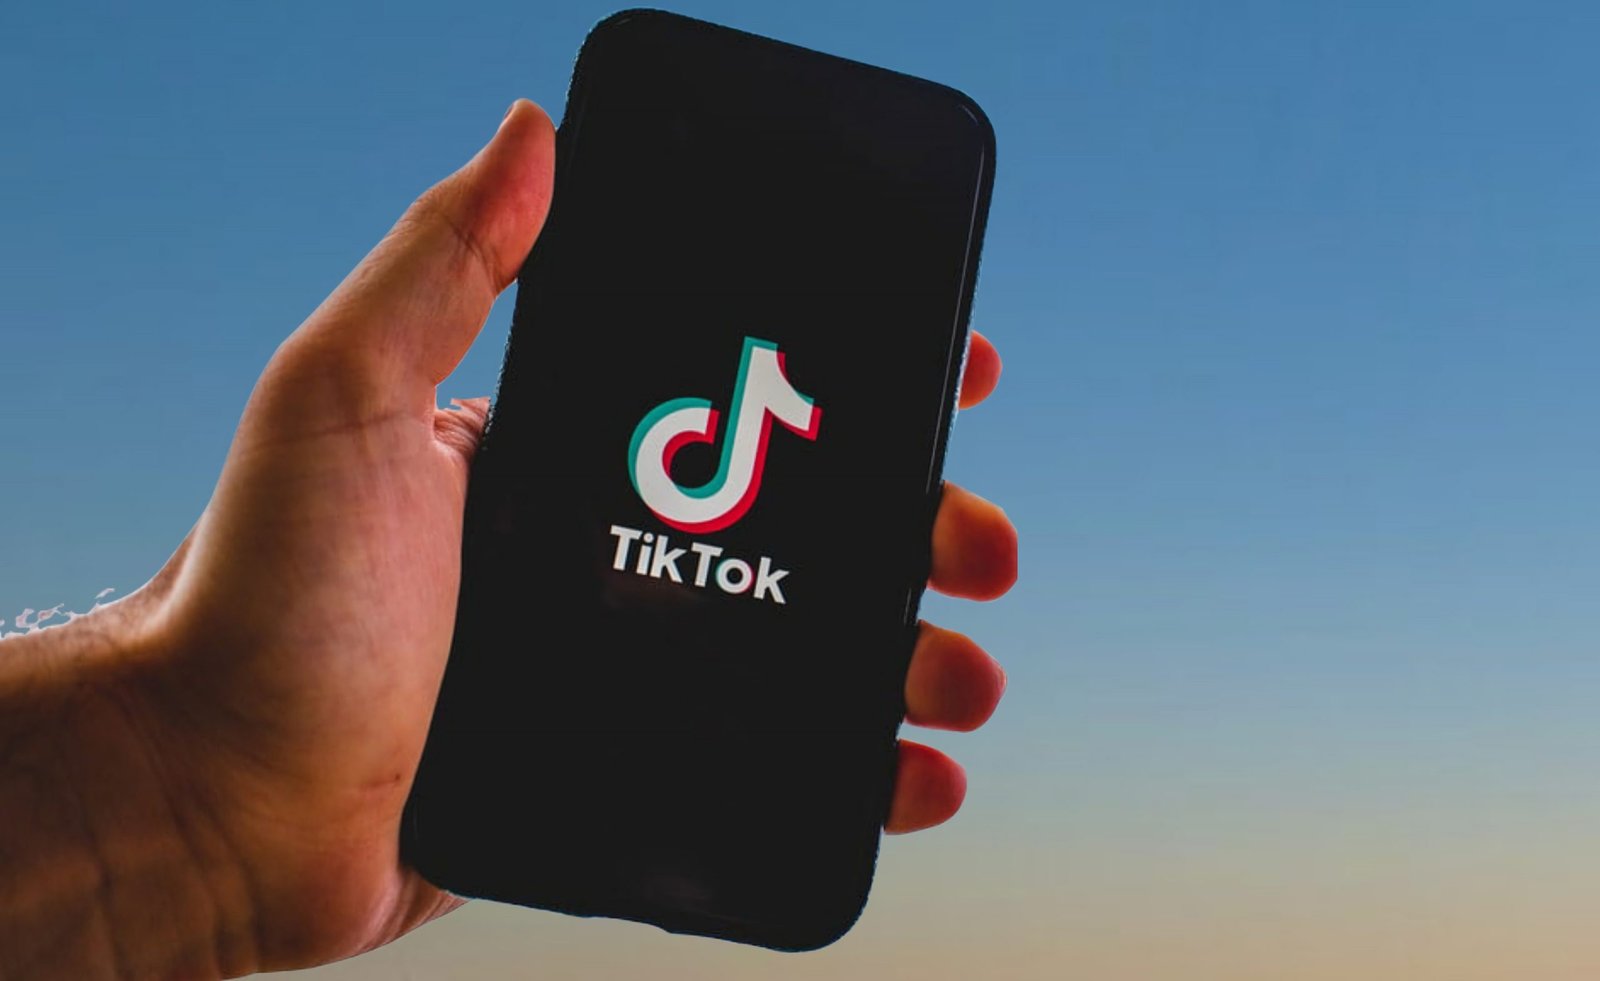 TikTok limita el acceso a menores de 14 años en China